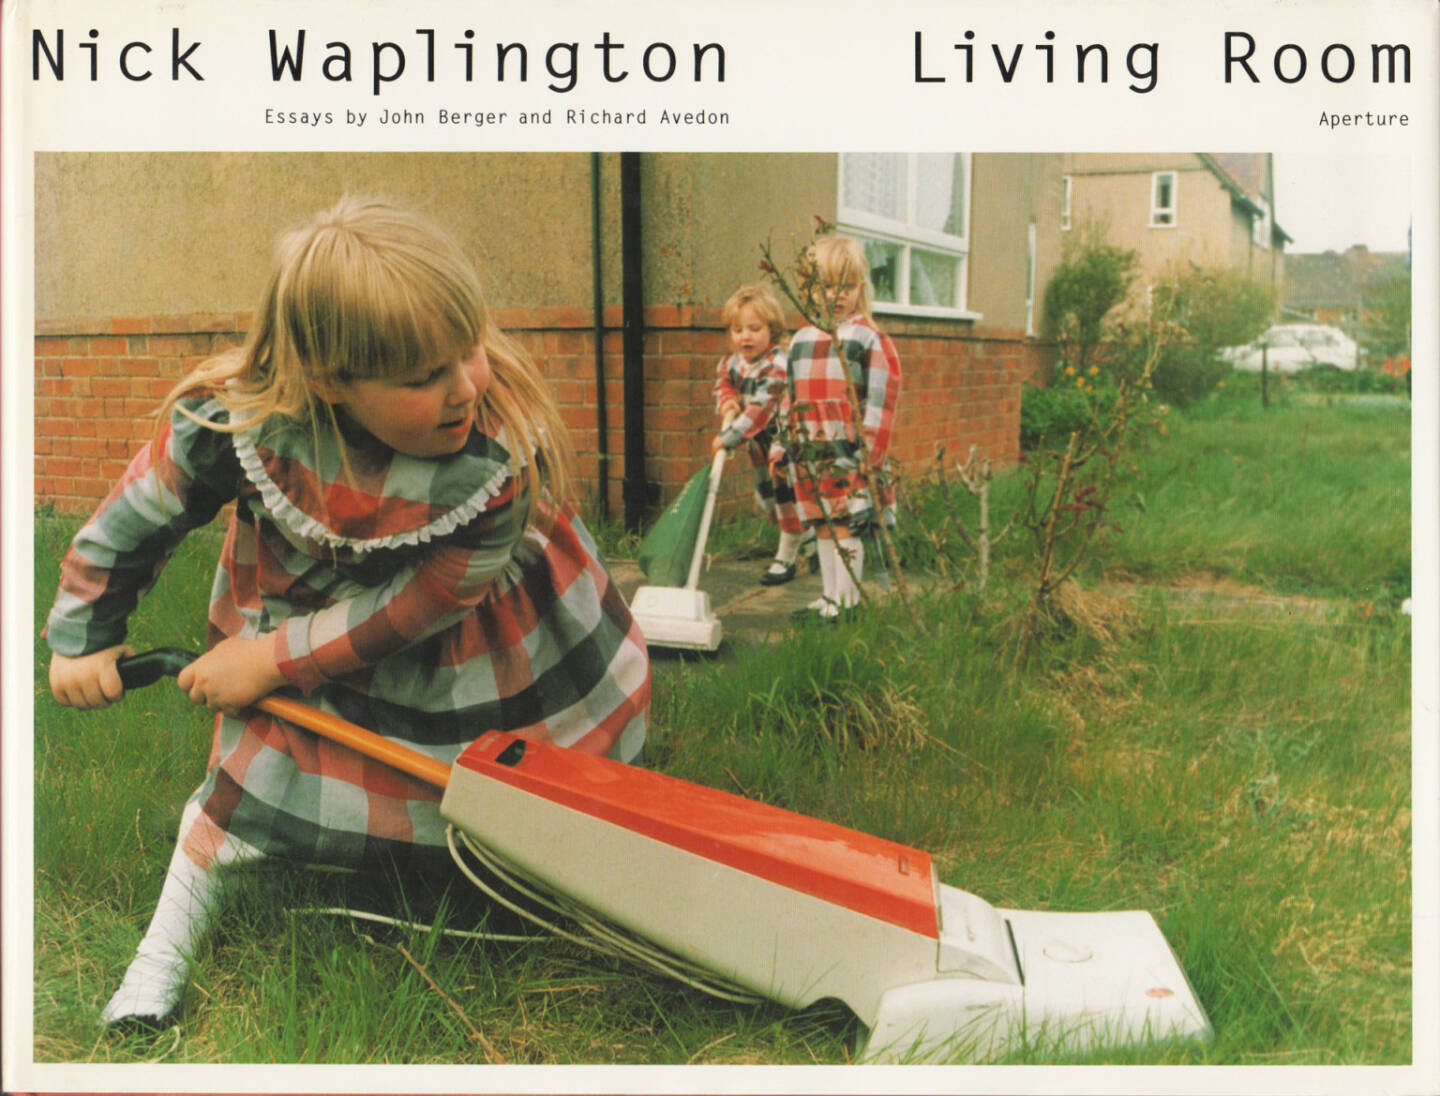 Nick Waplington - Living Room, Aperture, 1991, Cover - http://josefchladek.com/book/nick_waplington_-_living_room